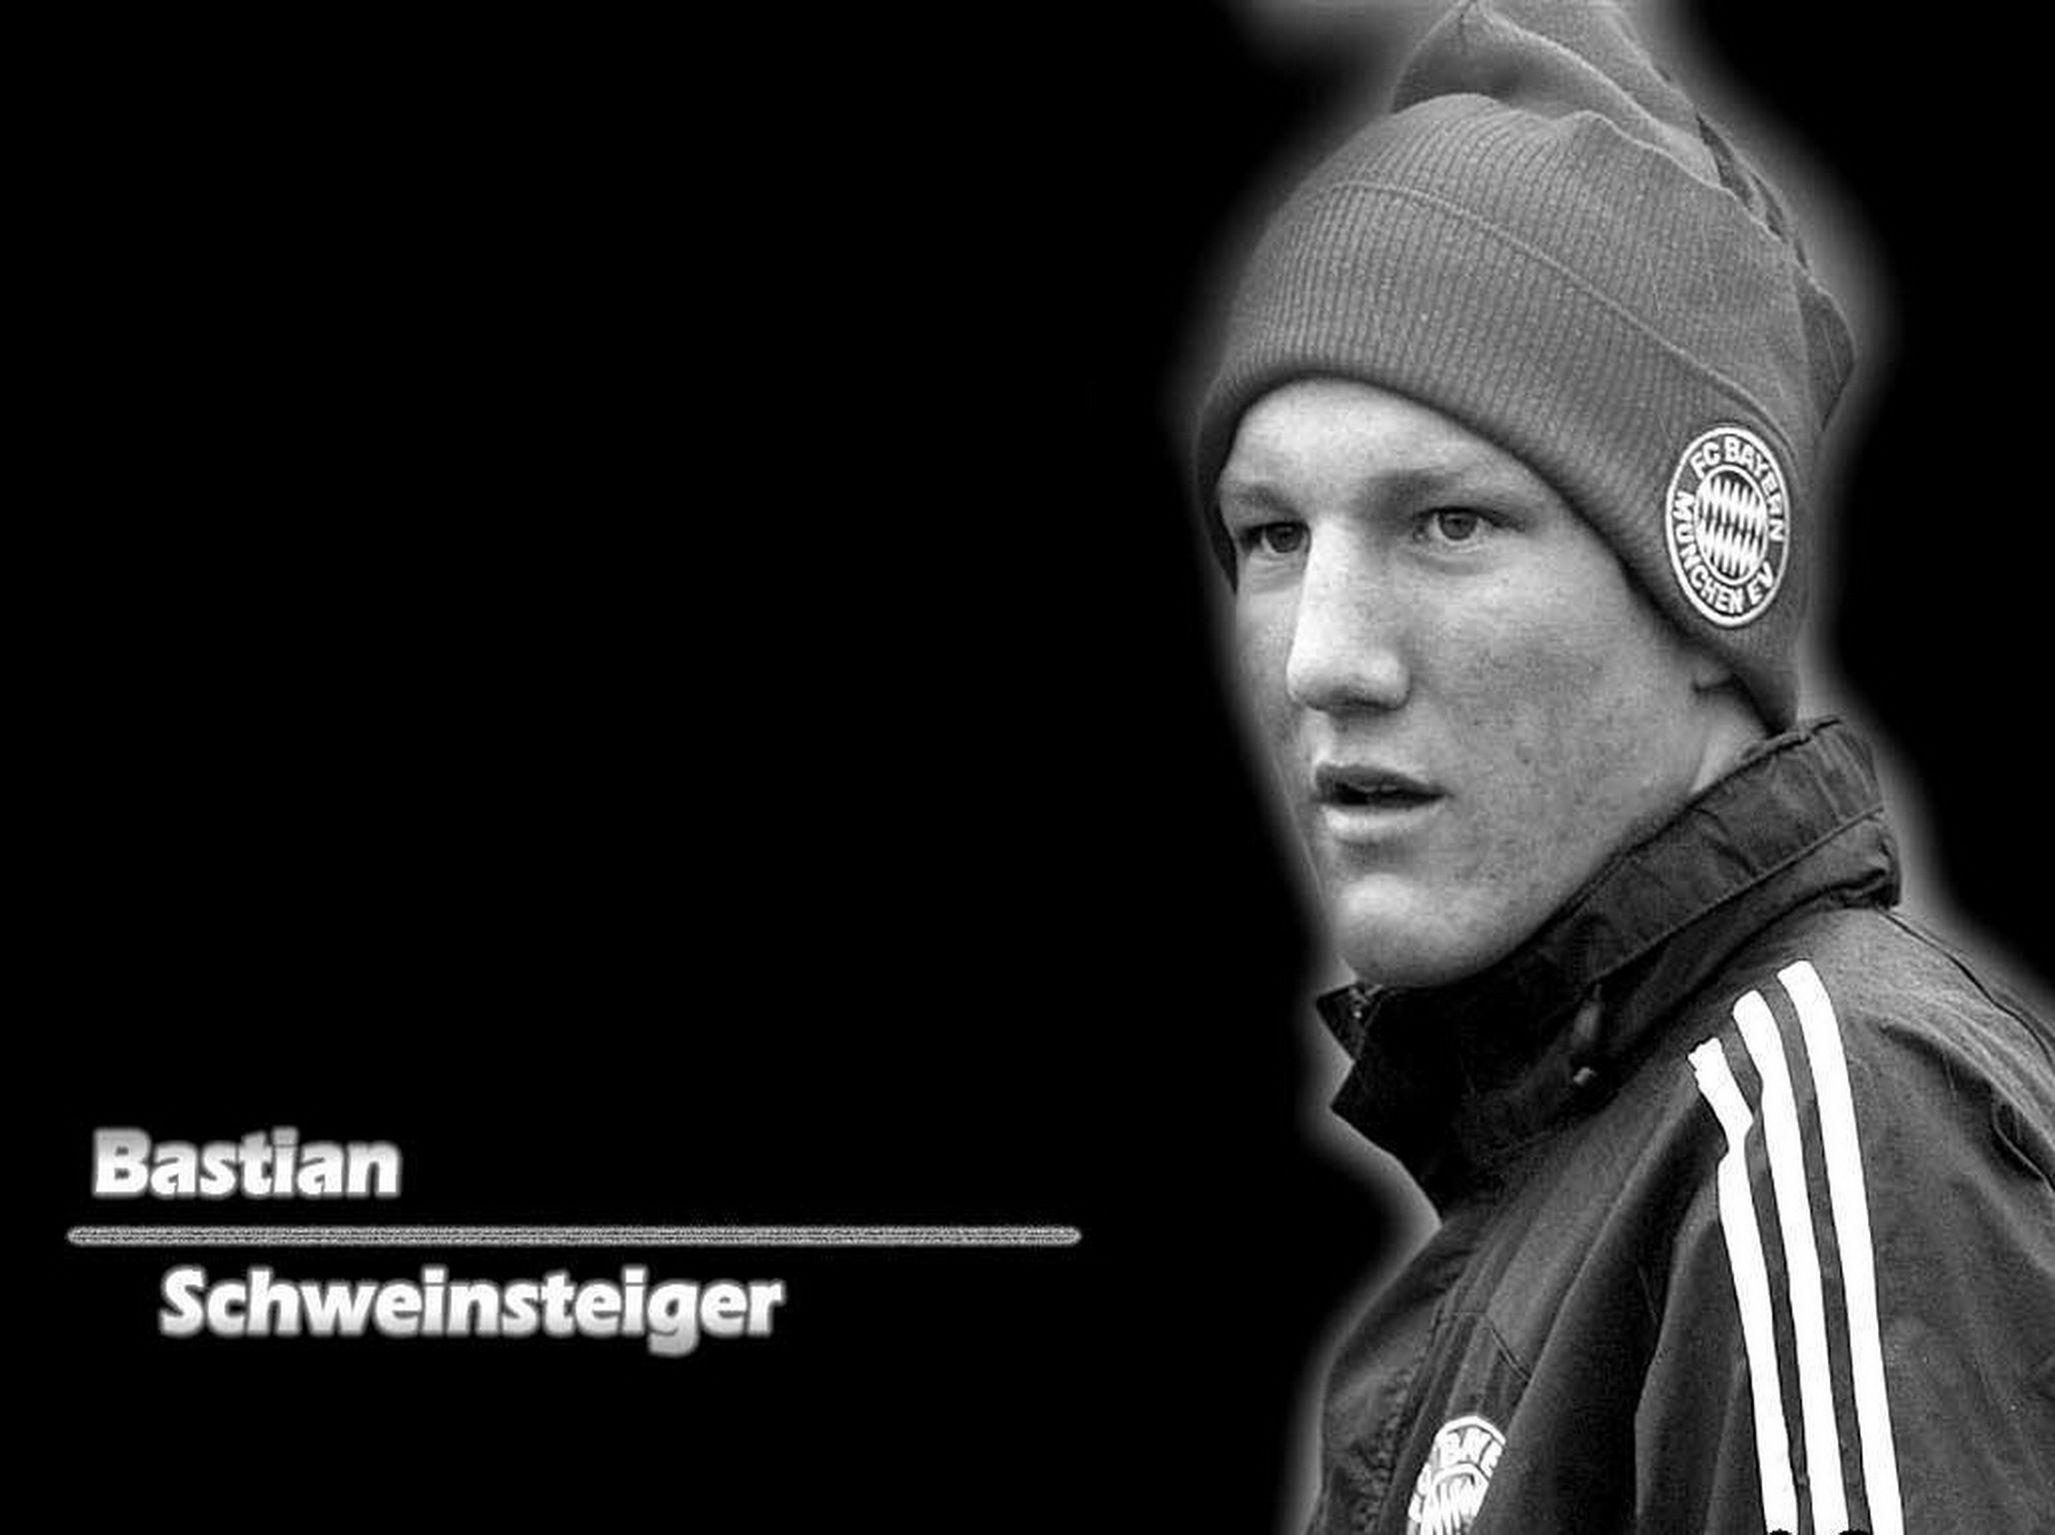 The best player of Bayern Bastian Schweinsteiger on black ...